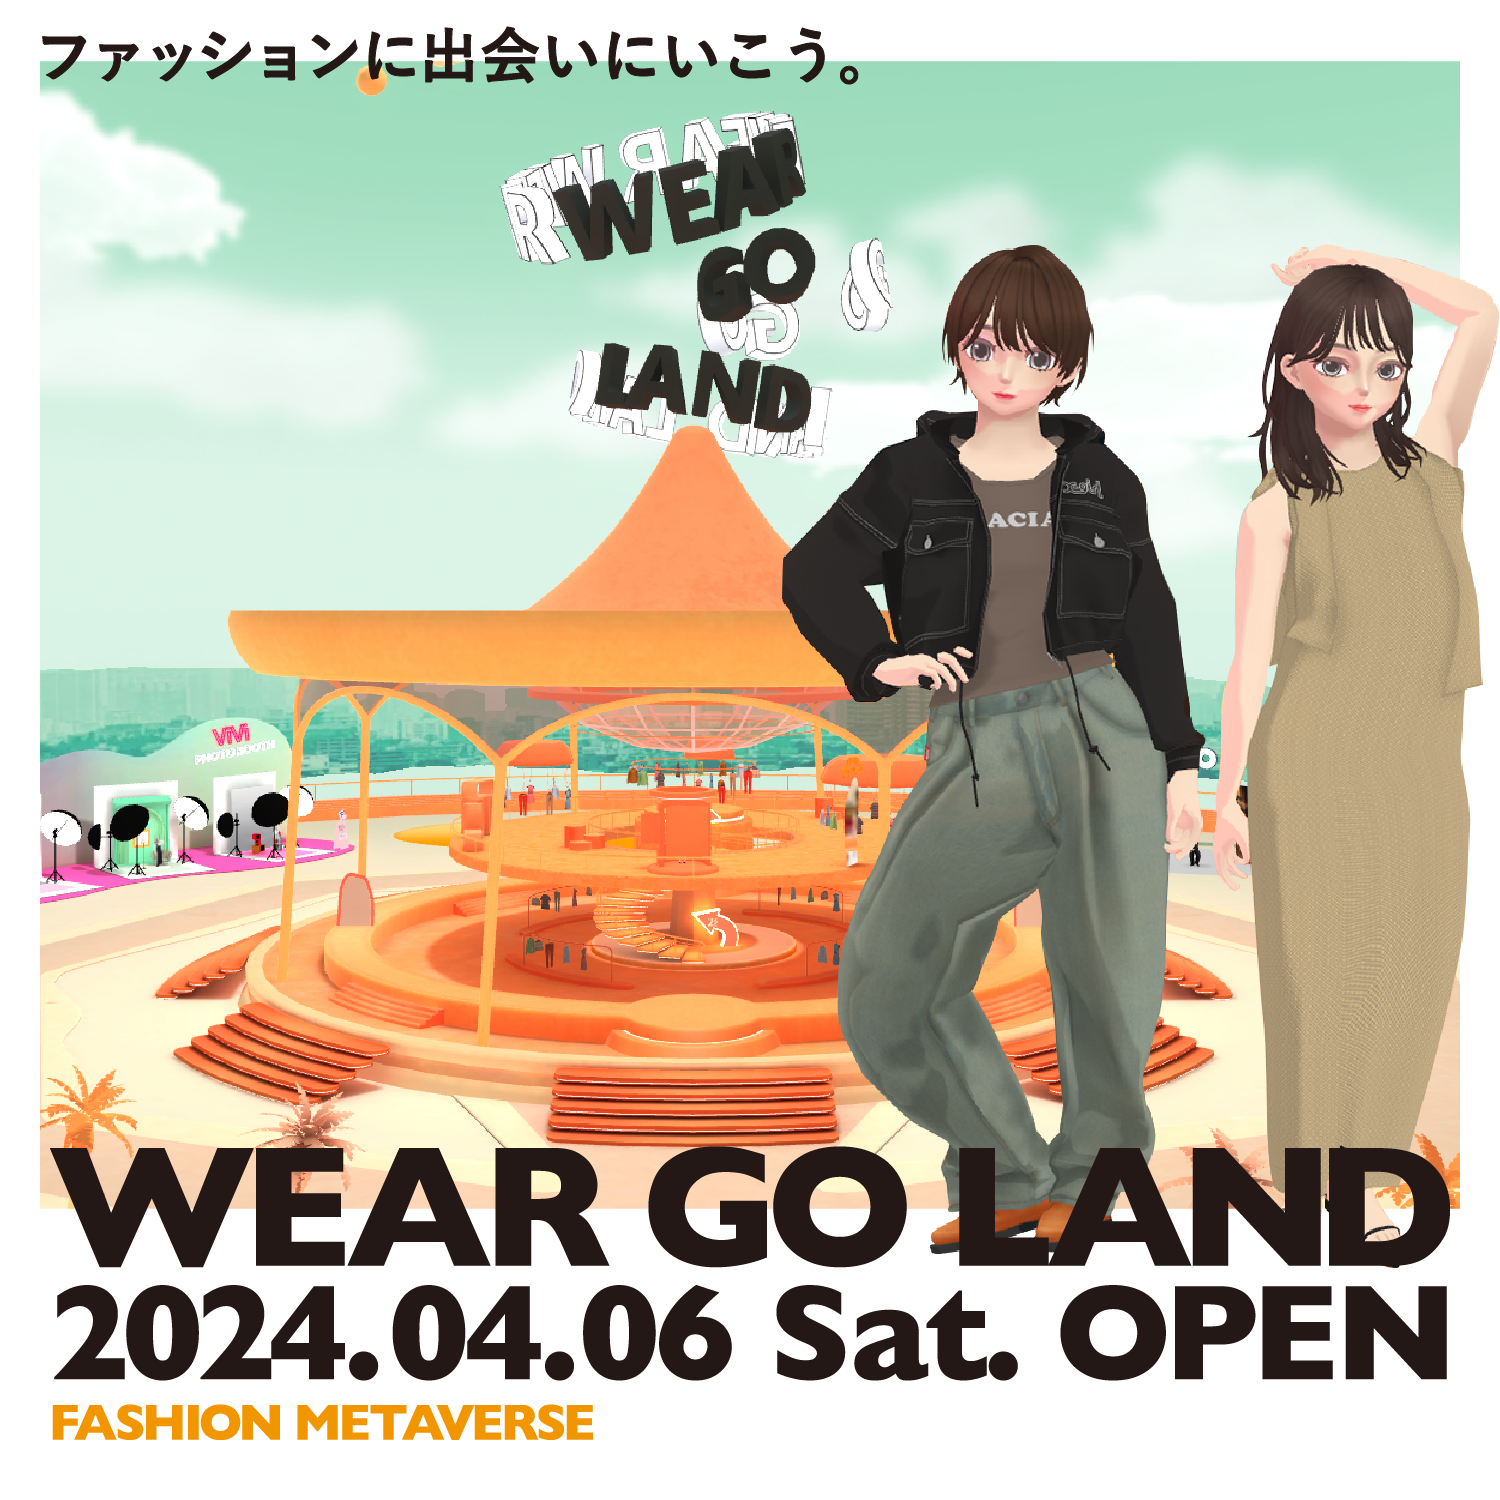 4月6日(土) メタバース空間『WEAR GO LAND』に出店